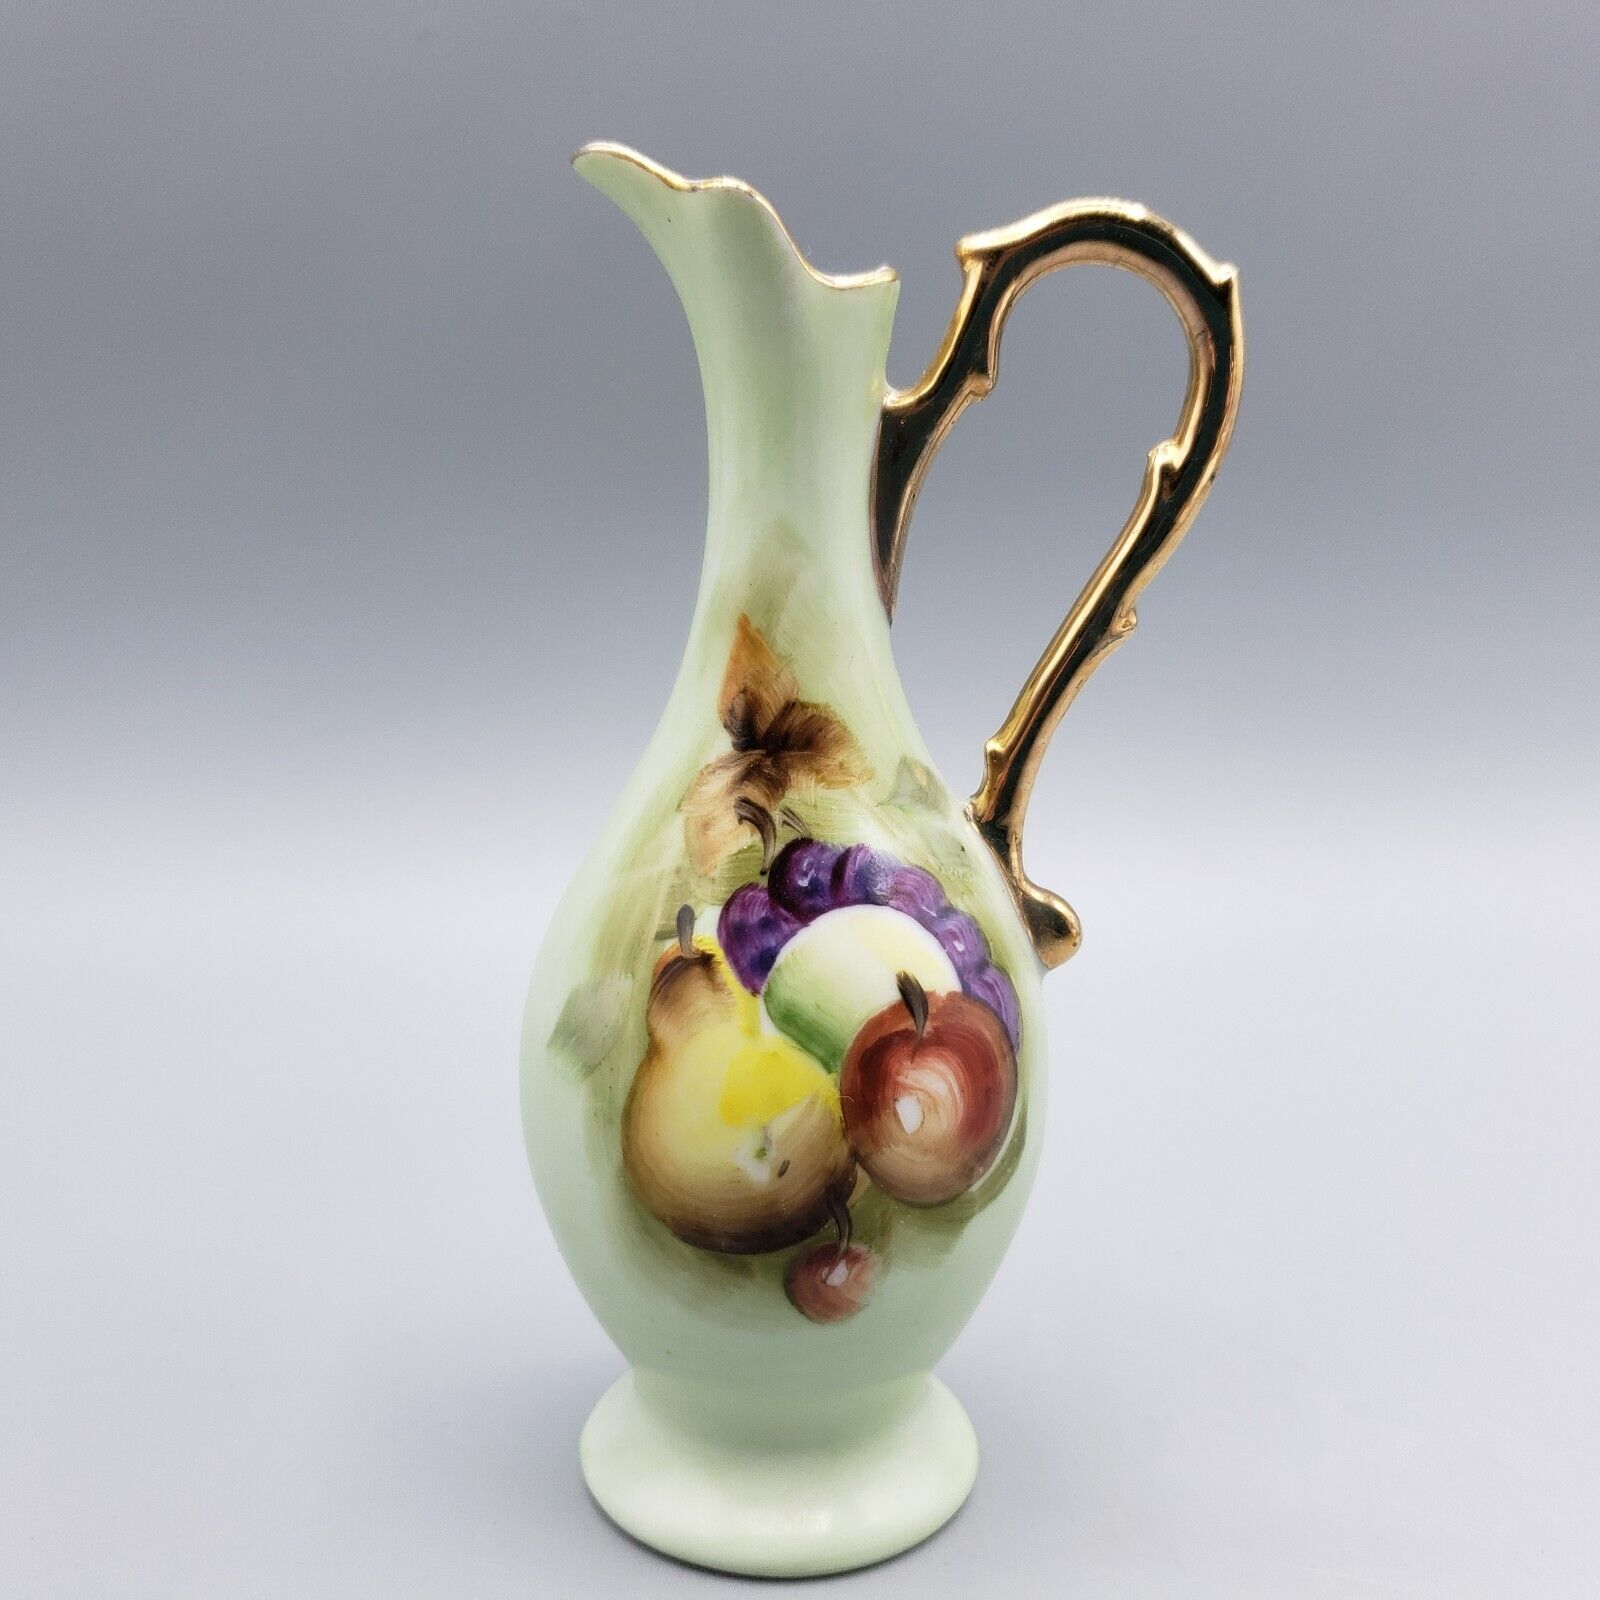 Vintage Lefton Ewer Vase Hand Painted Fruit Green Porcelain #8287 Gold Trim Jug